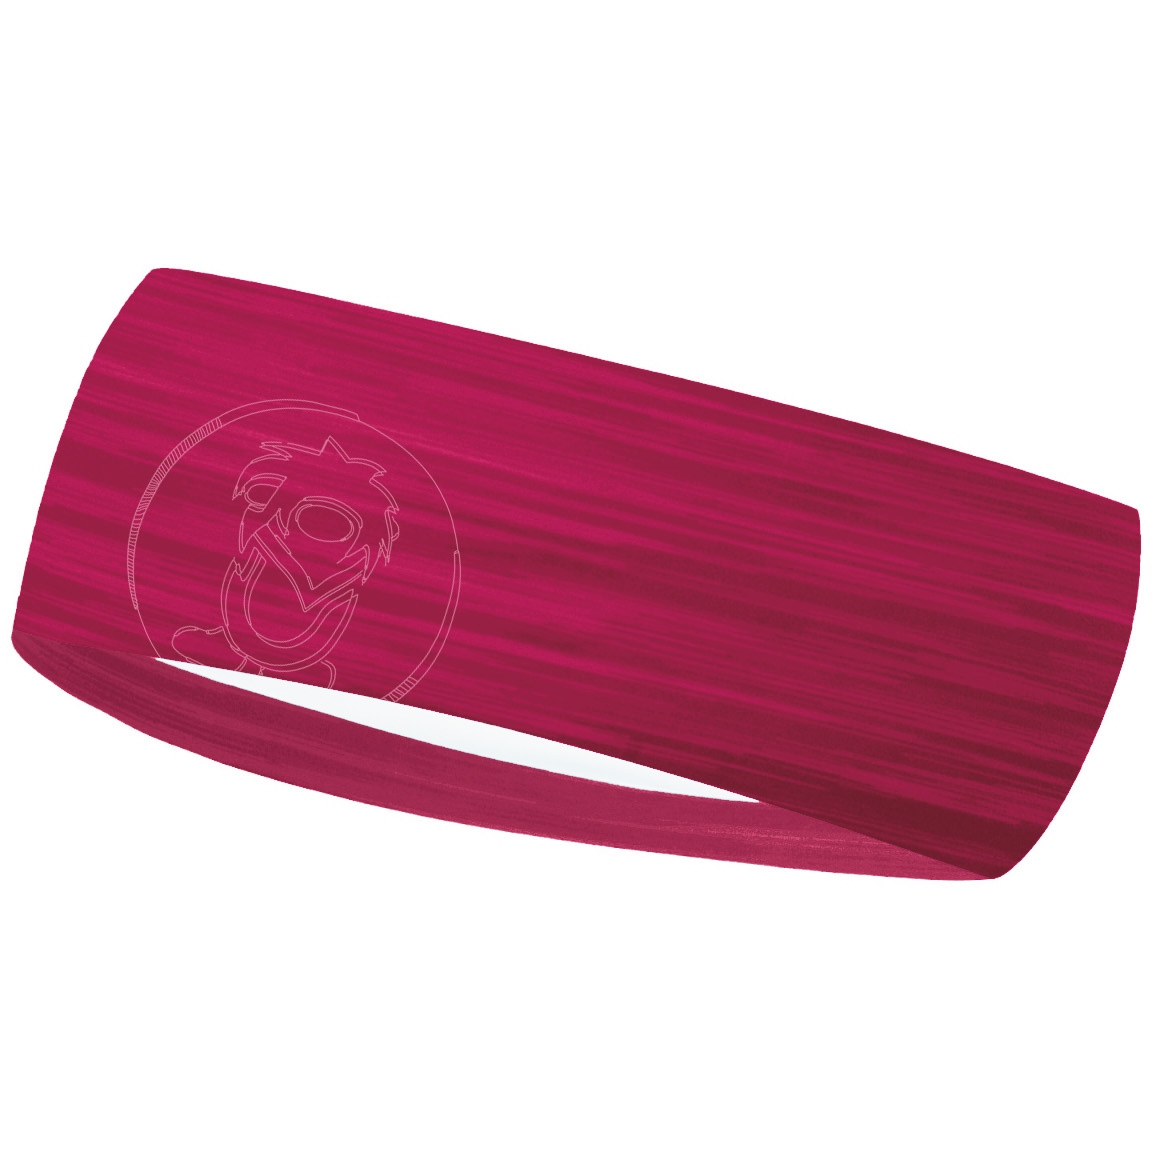 Produktbild von Trollkids Stirnband Kinder - rubine red